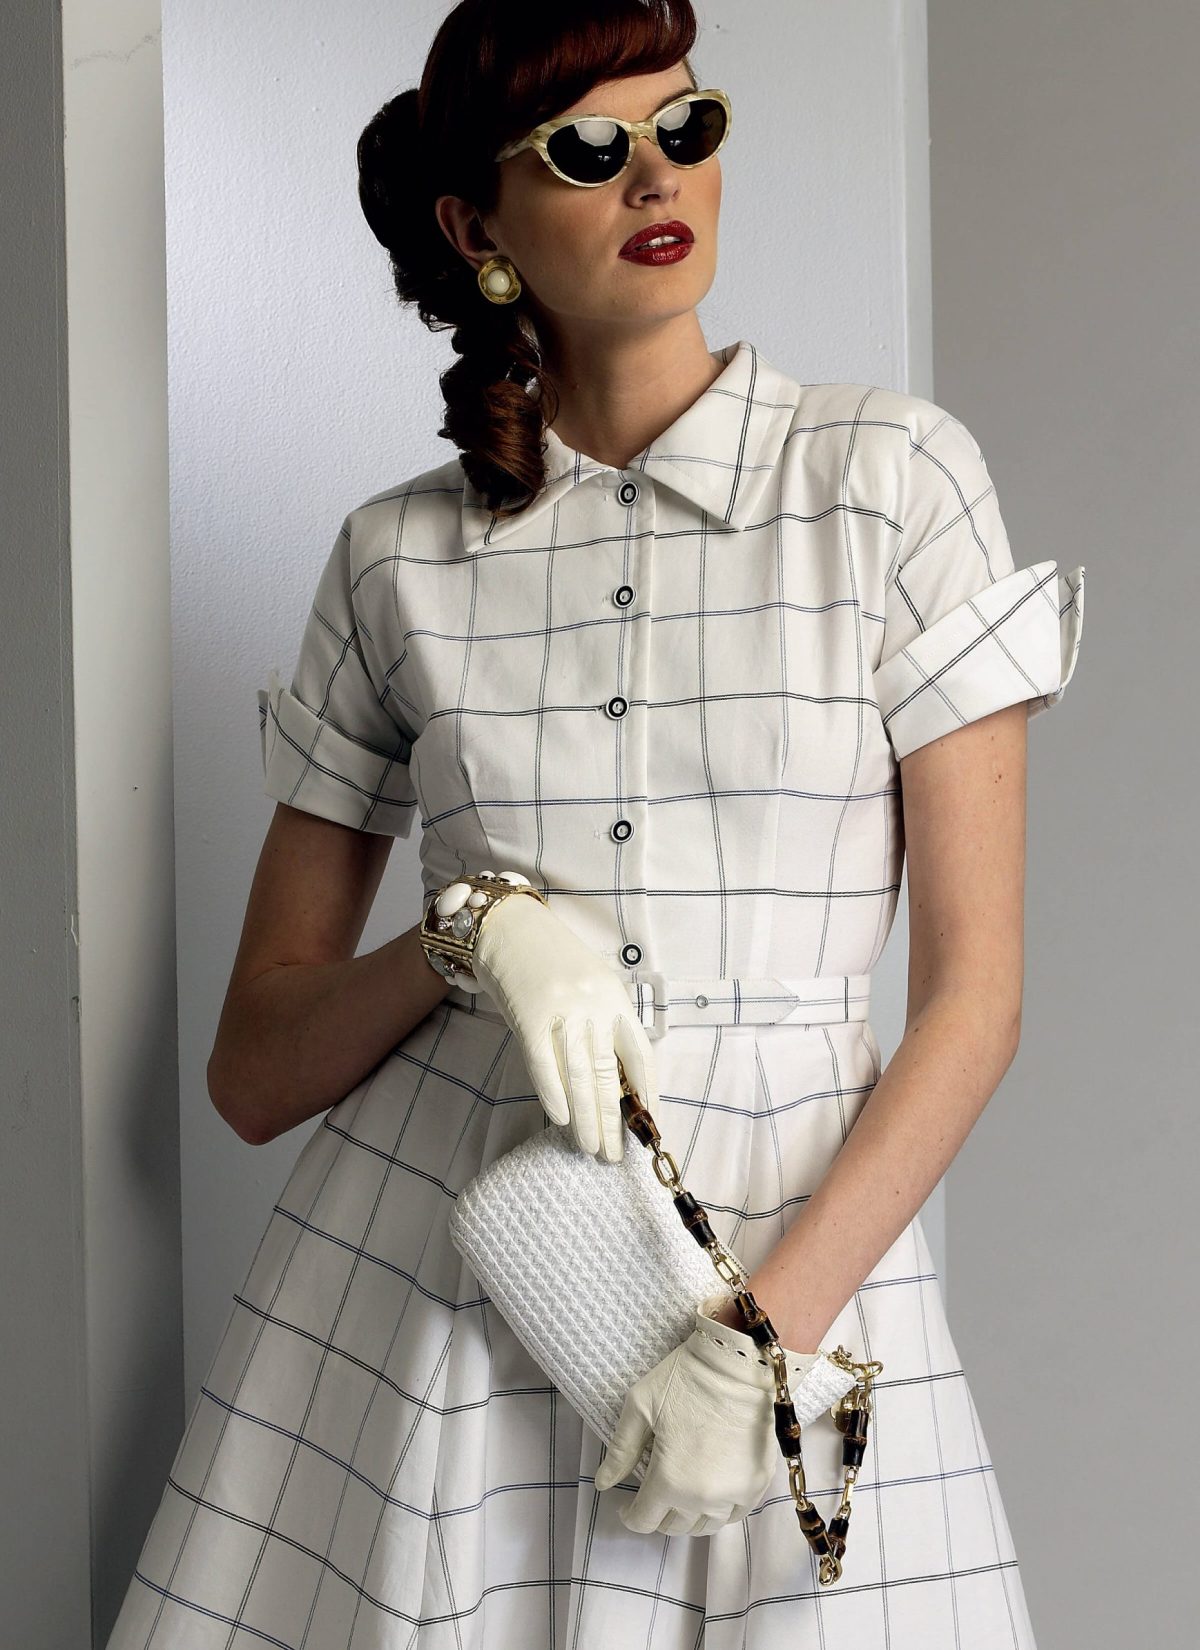 Vogue Patterns V9000 Misses' Dress and Belt